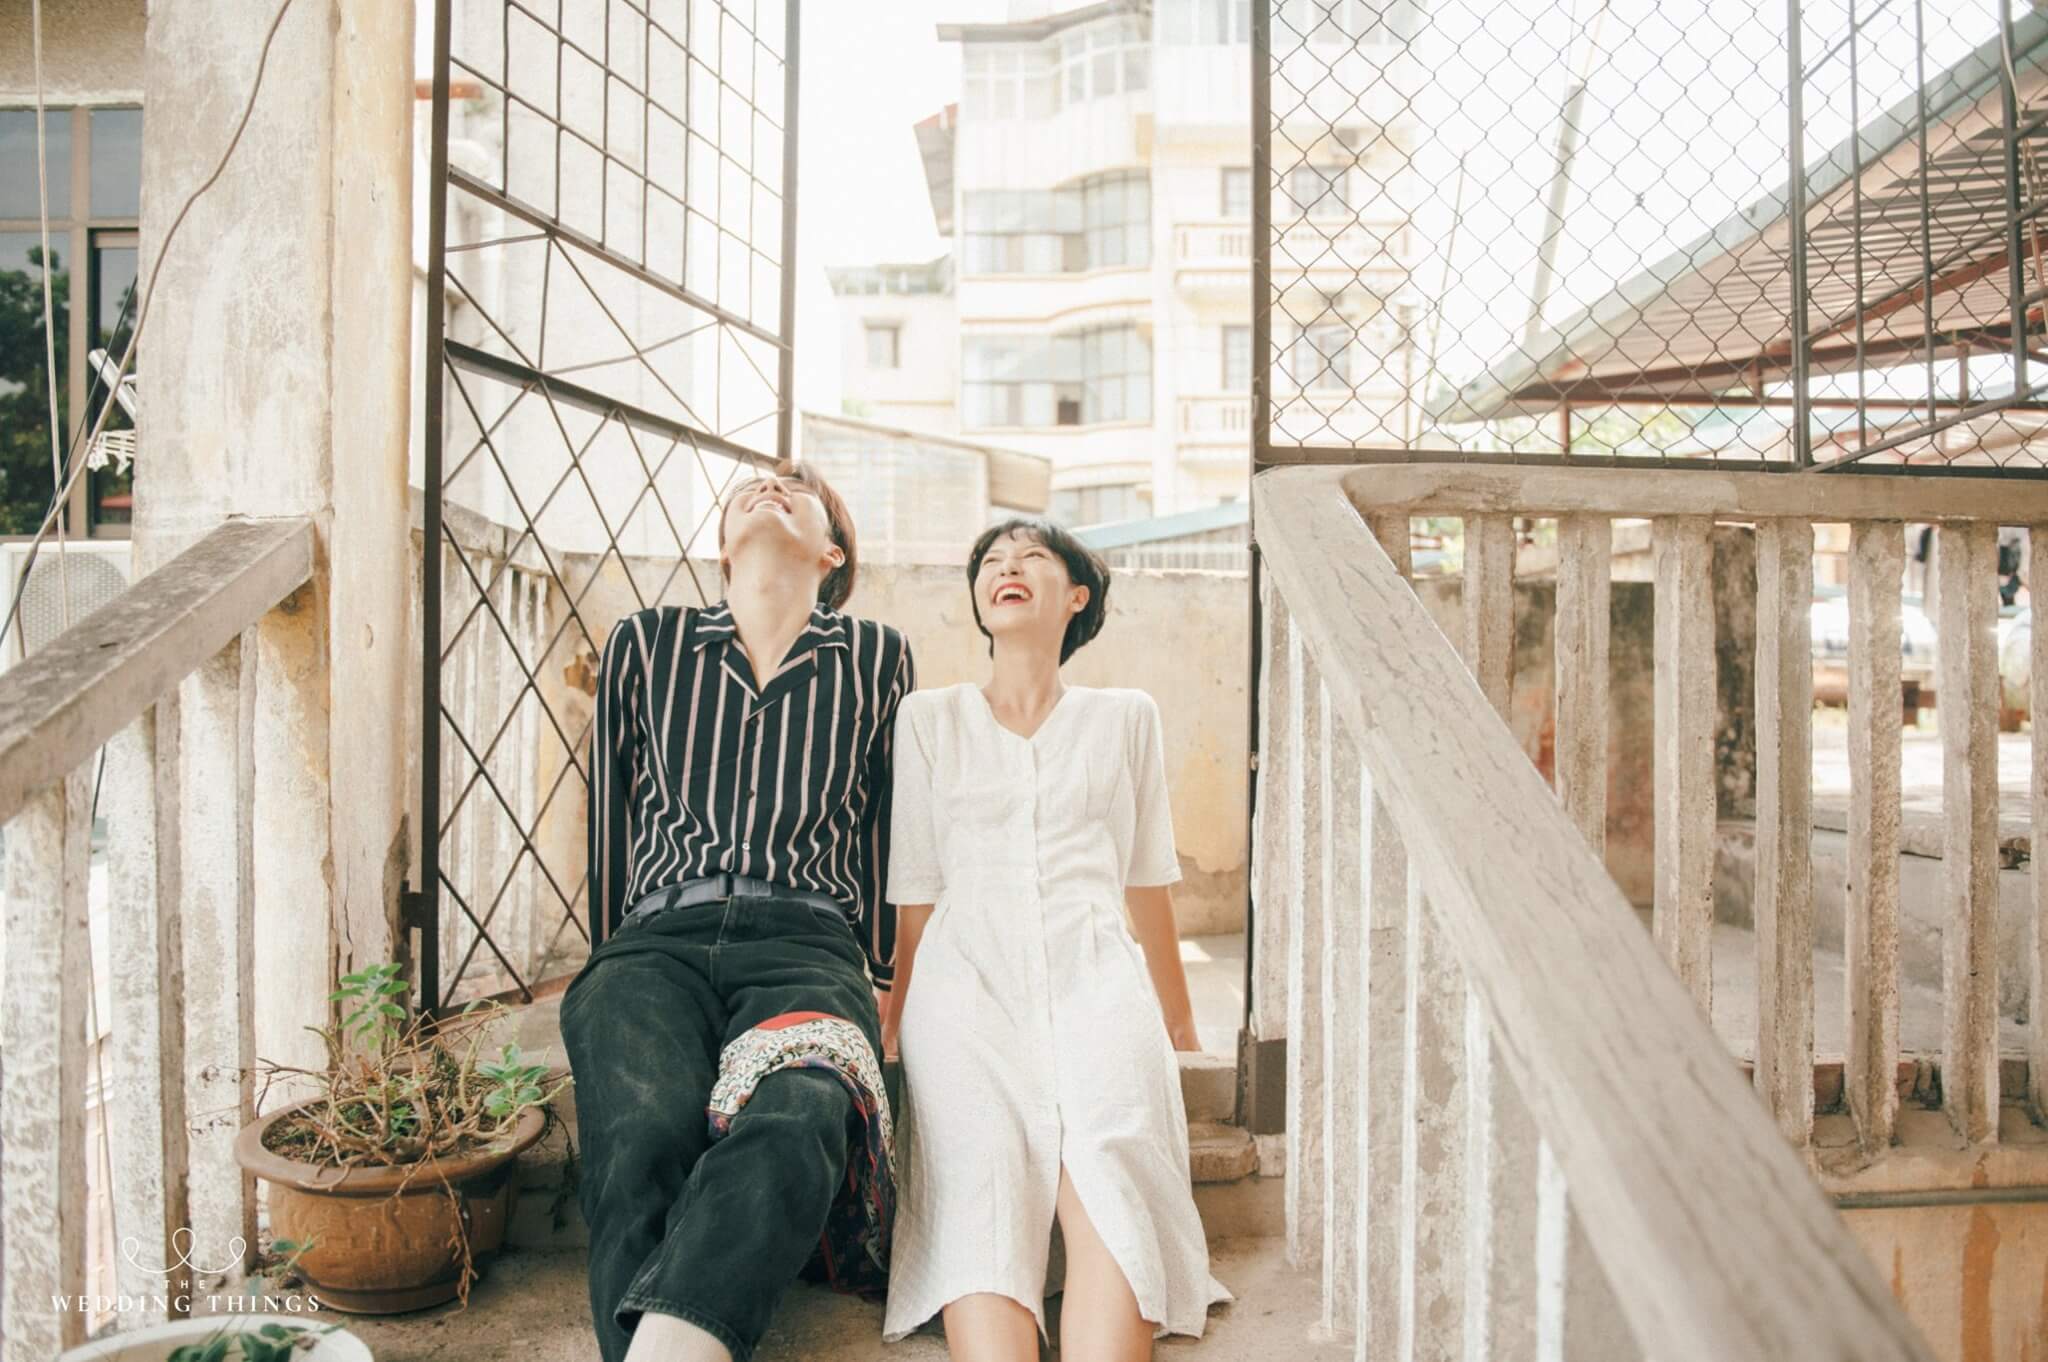 Hình cưới đẹp ở Hà Nội lãng mạn cute